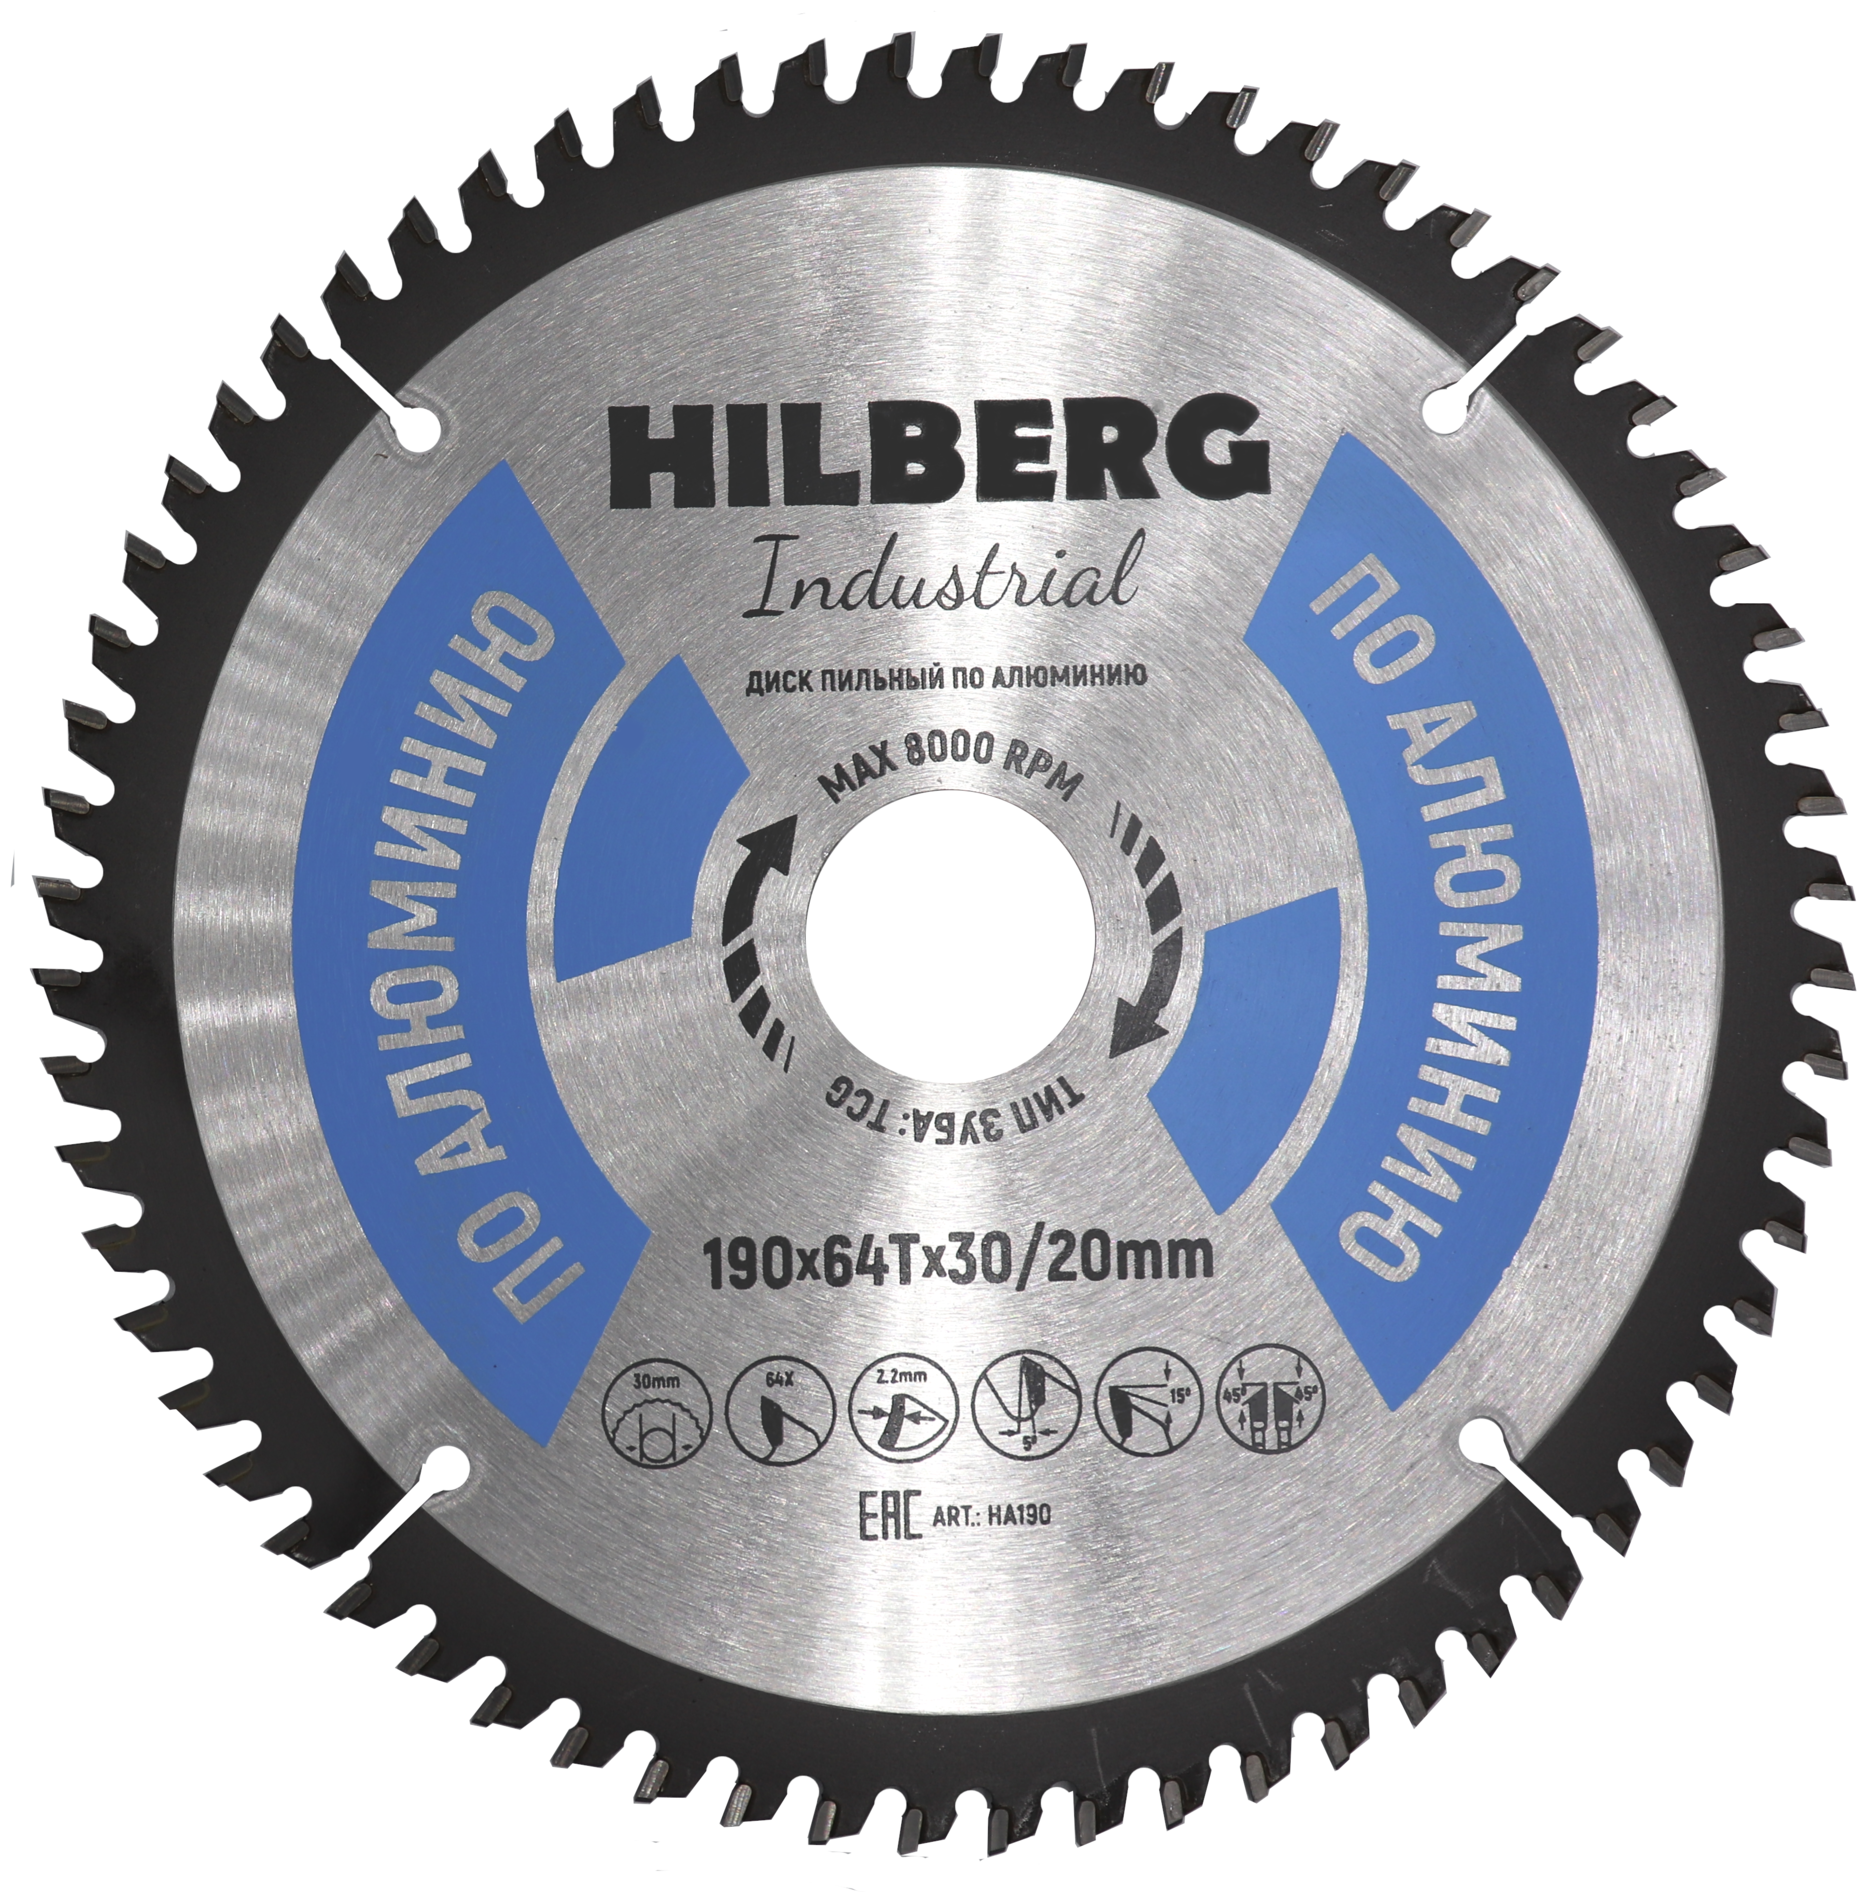 Диск Hilberg Industrial HA190 пильный по алюминию 190x30/20mm 64 зуба